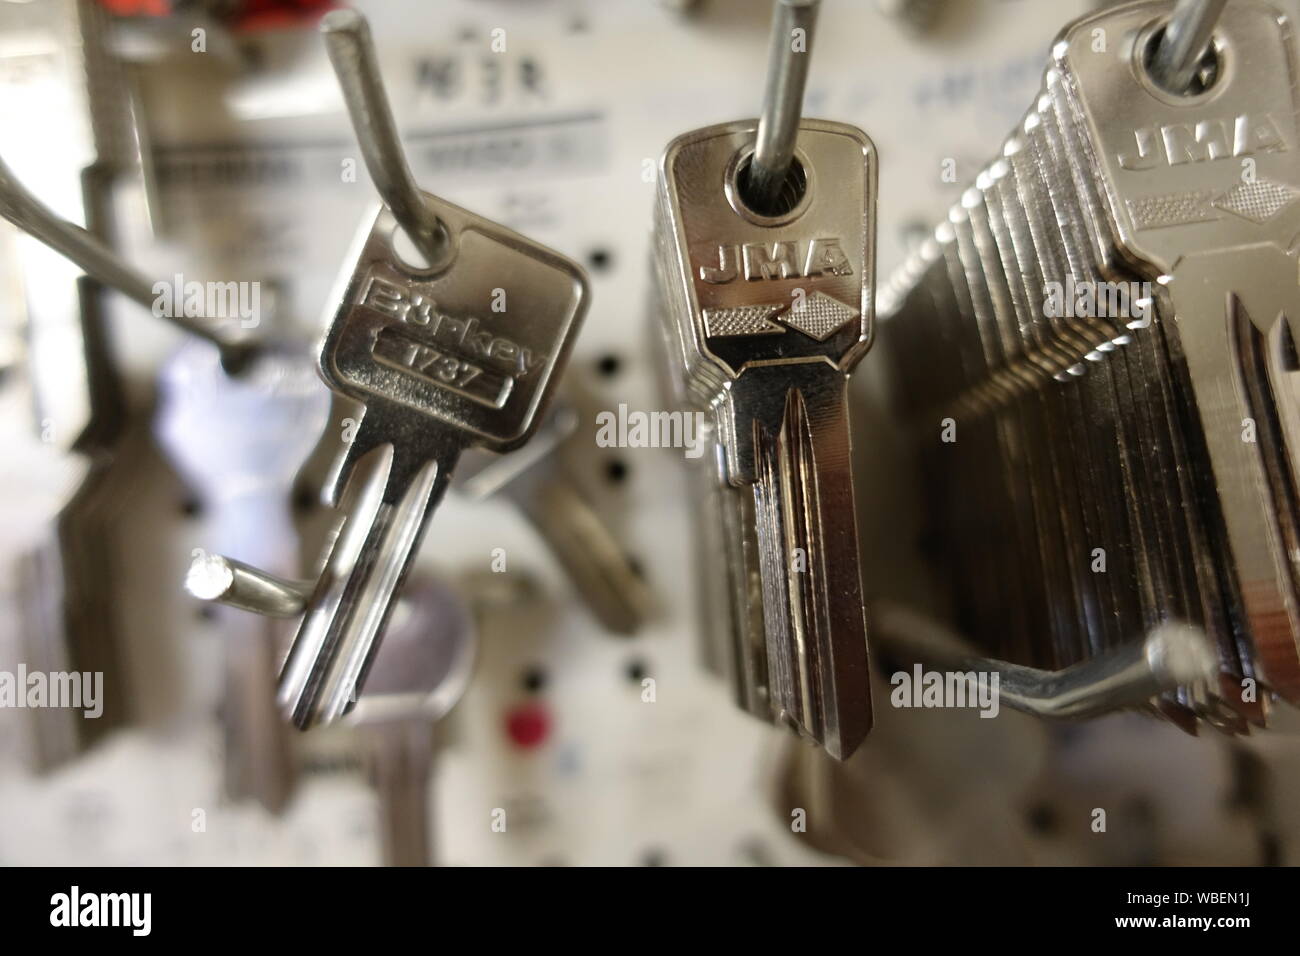 Keys hanging on Hooks Stock Photo